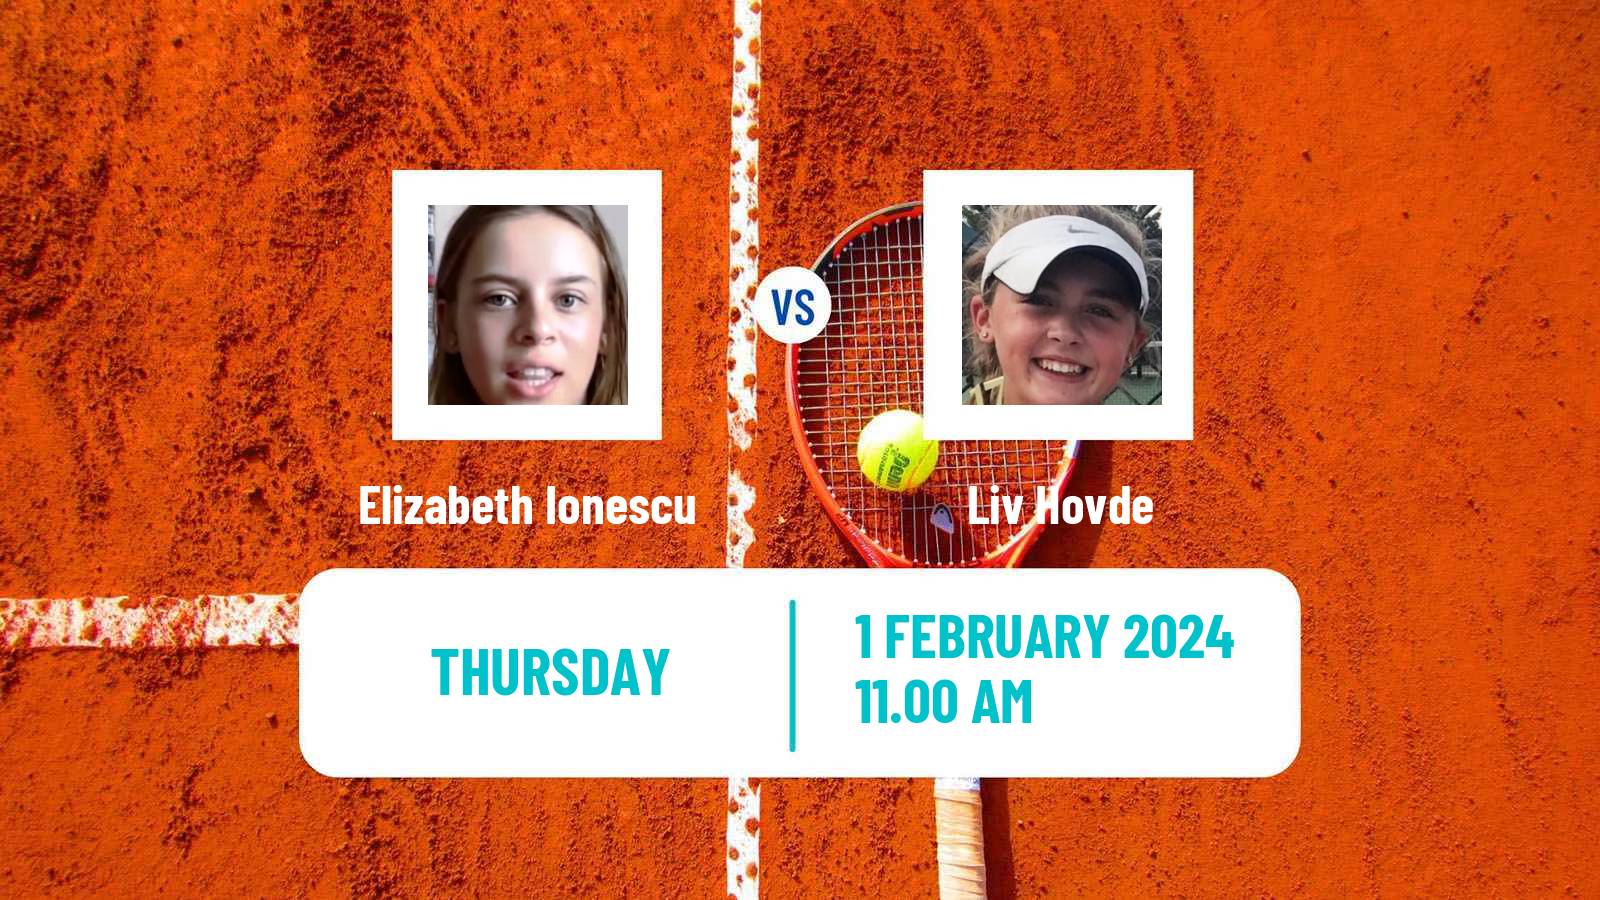 Tennis ITF W75 Rome Ga Women Elizabeth Ionescu - Liv Hovde